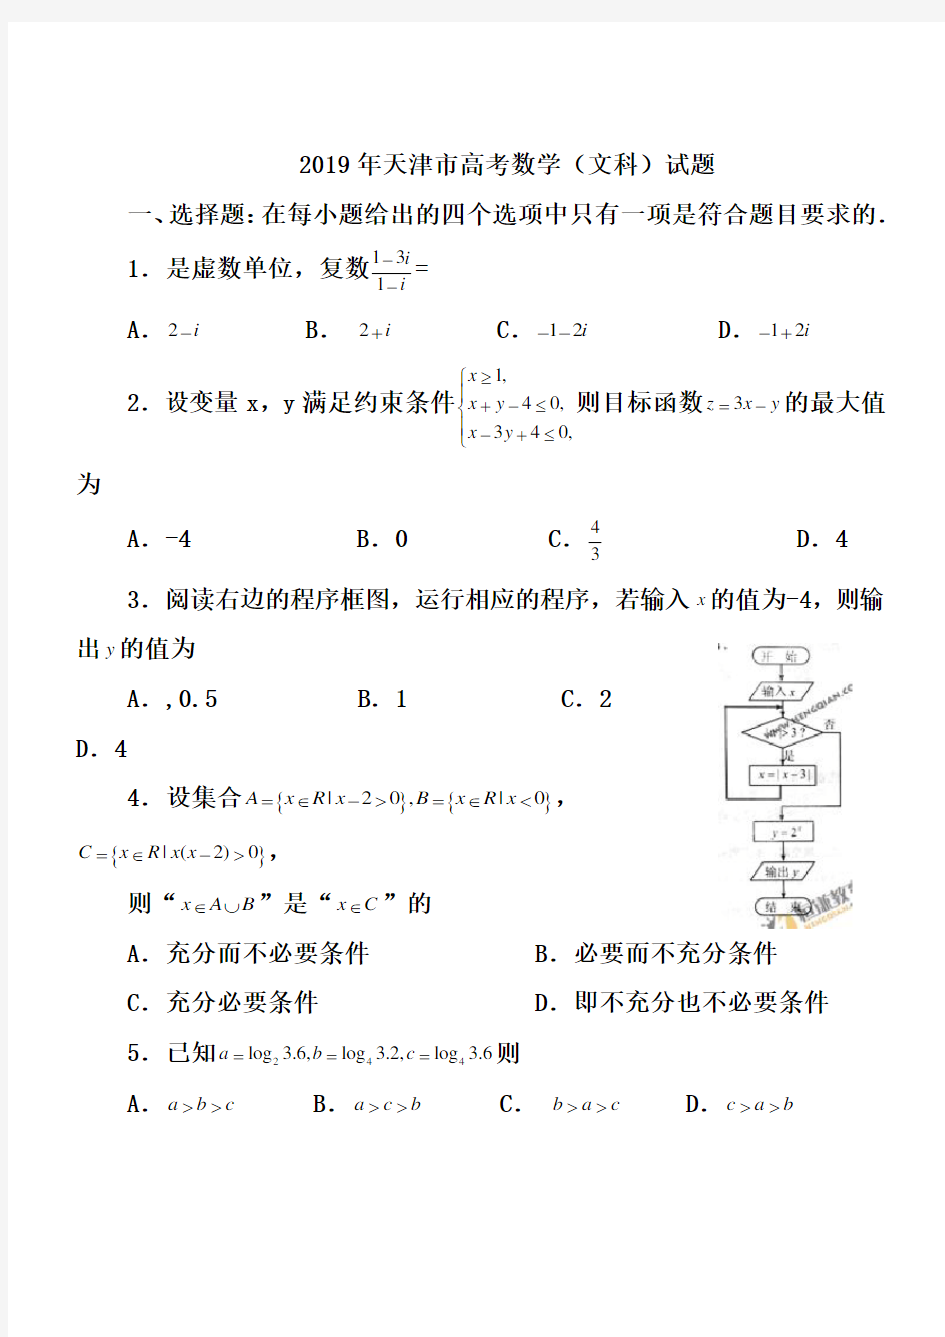 (完整版)2019年天津市高考数学(文科)试题